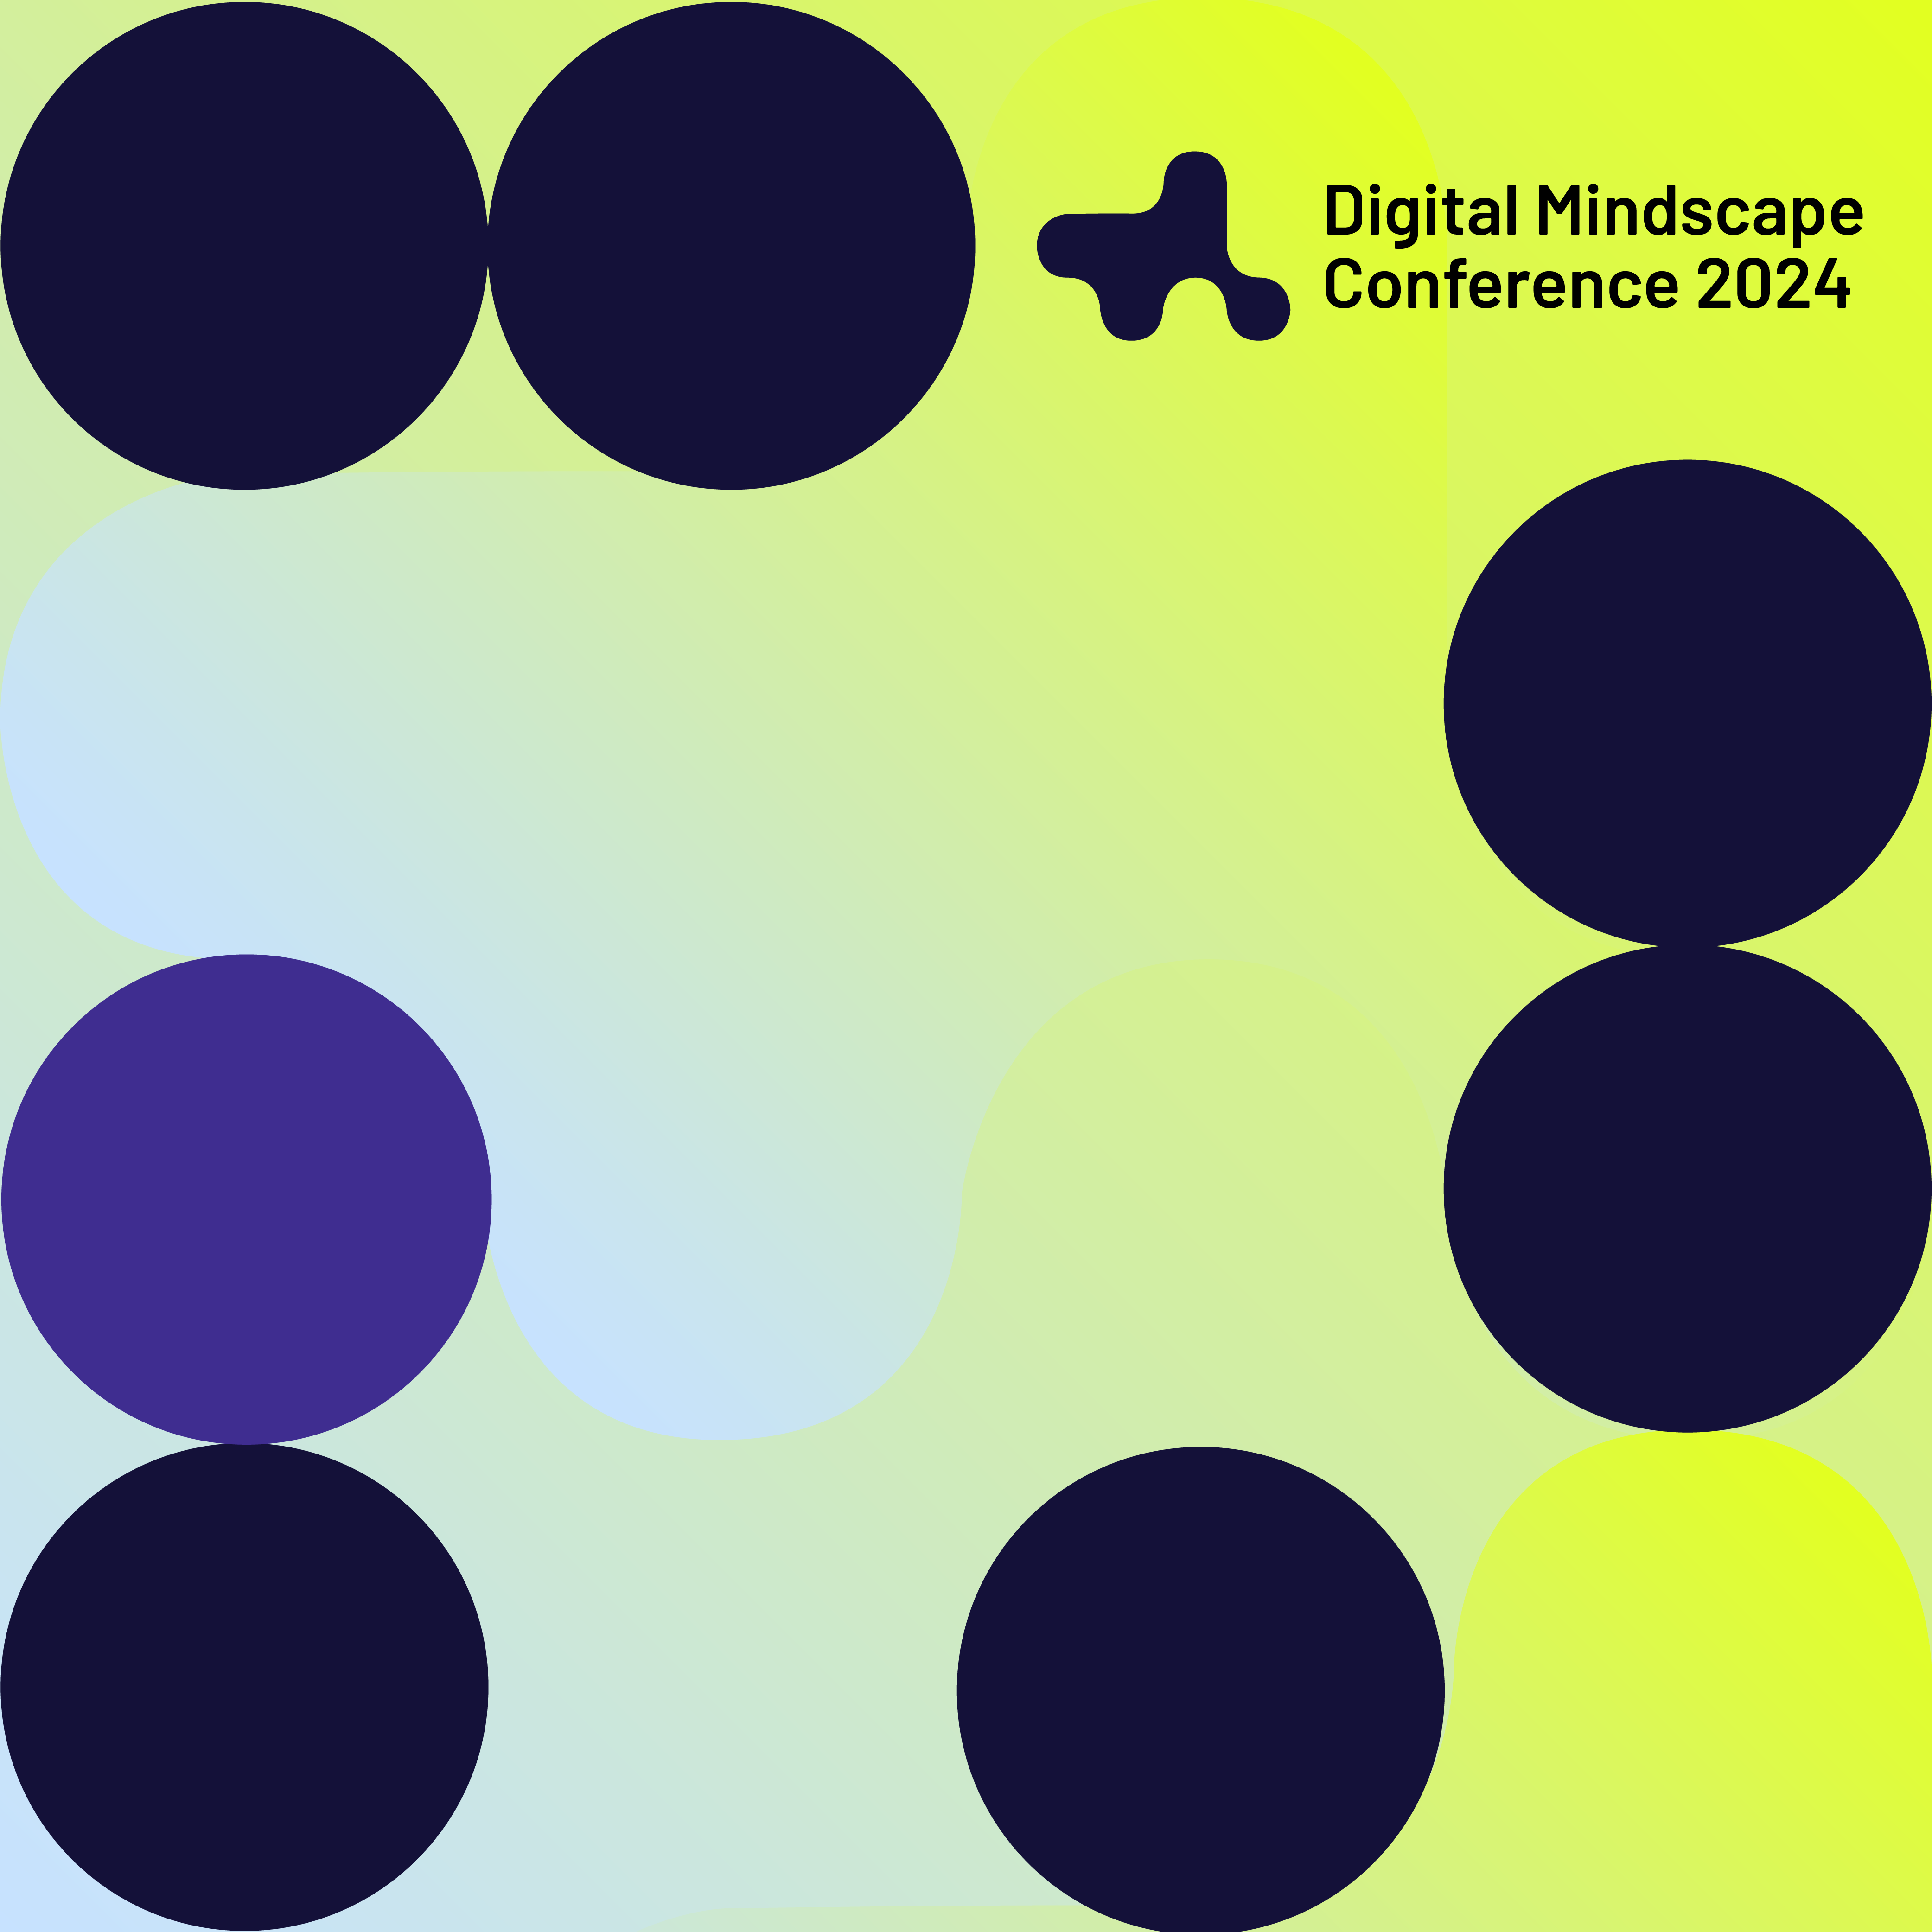 Abstrakcyjna grafika zapowiadająca konferencję Digital Mindscape